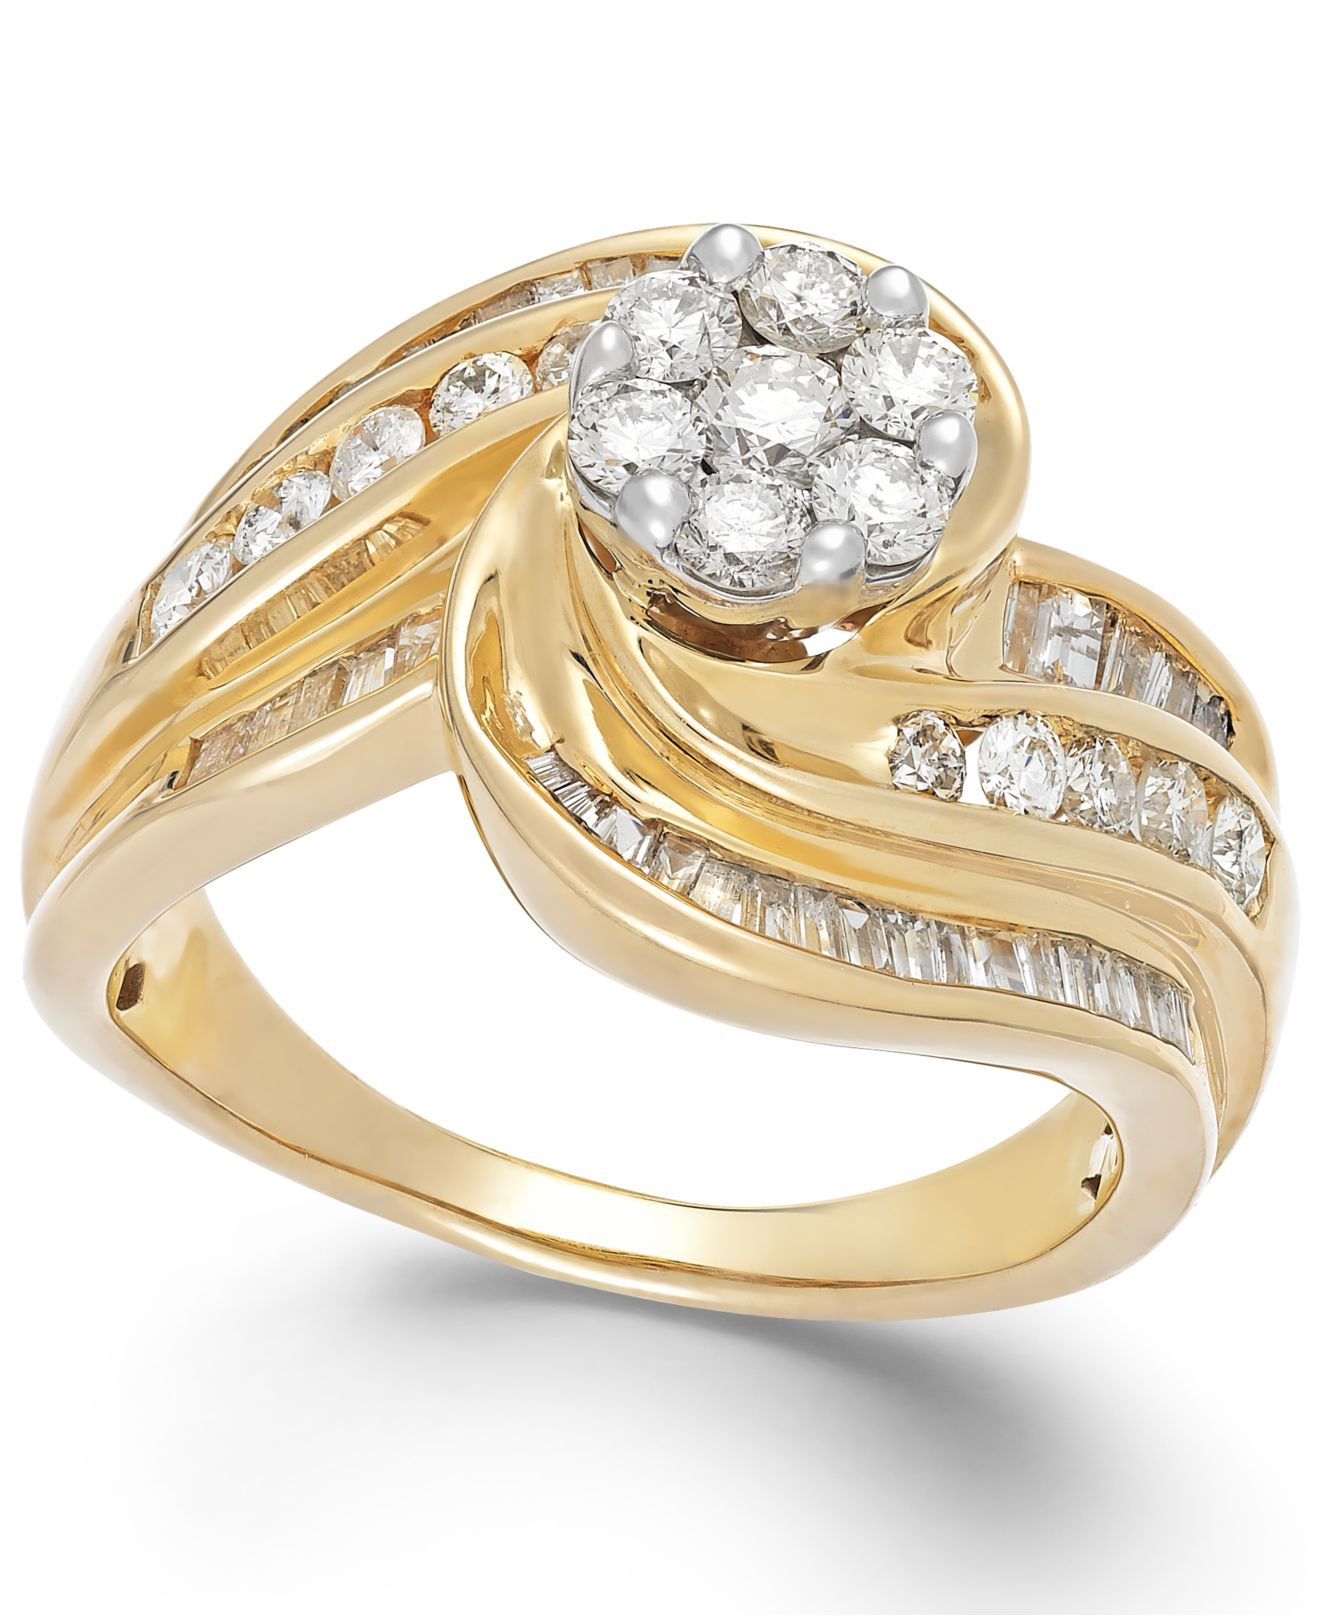 Macys Diamond Rings
 Macy s Diamond Swirl Ring In 10k Gold 1 1 4 Ct T w in